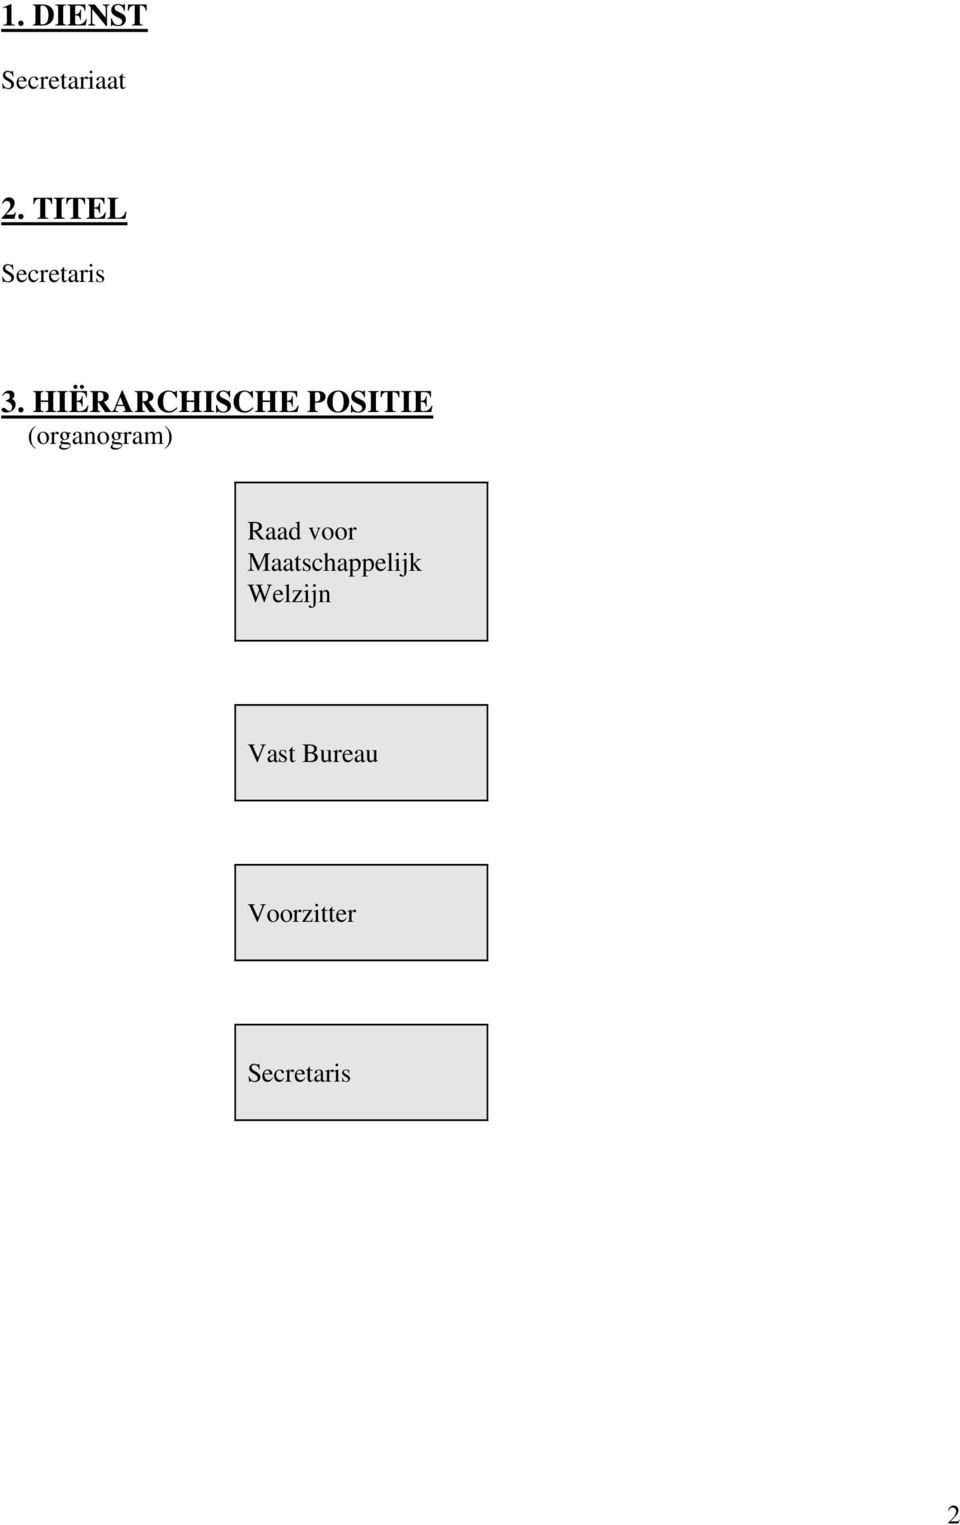 HIËRARCHISCHE POSITIE (organogram)